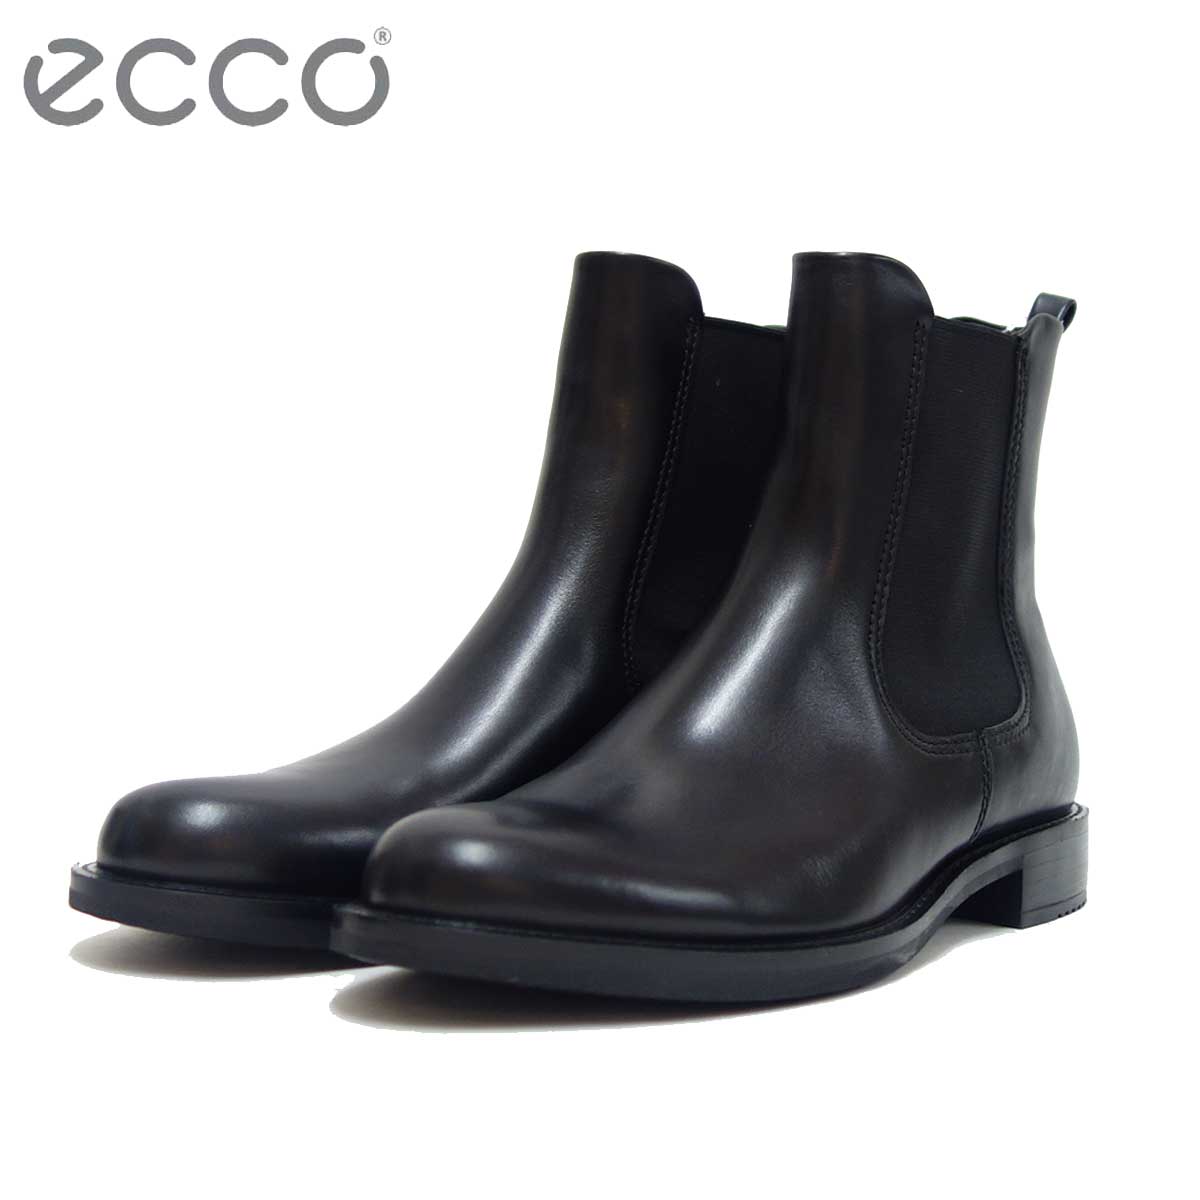 エコー 当店一番人気 送料込 ECCO 266503 ブラック レディース 靴 上質天然皮革のサイドゴアブーツ